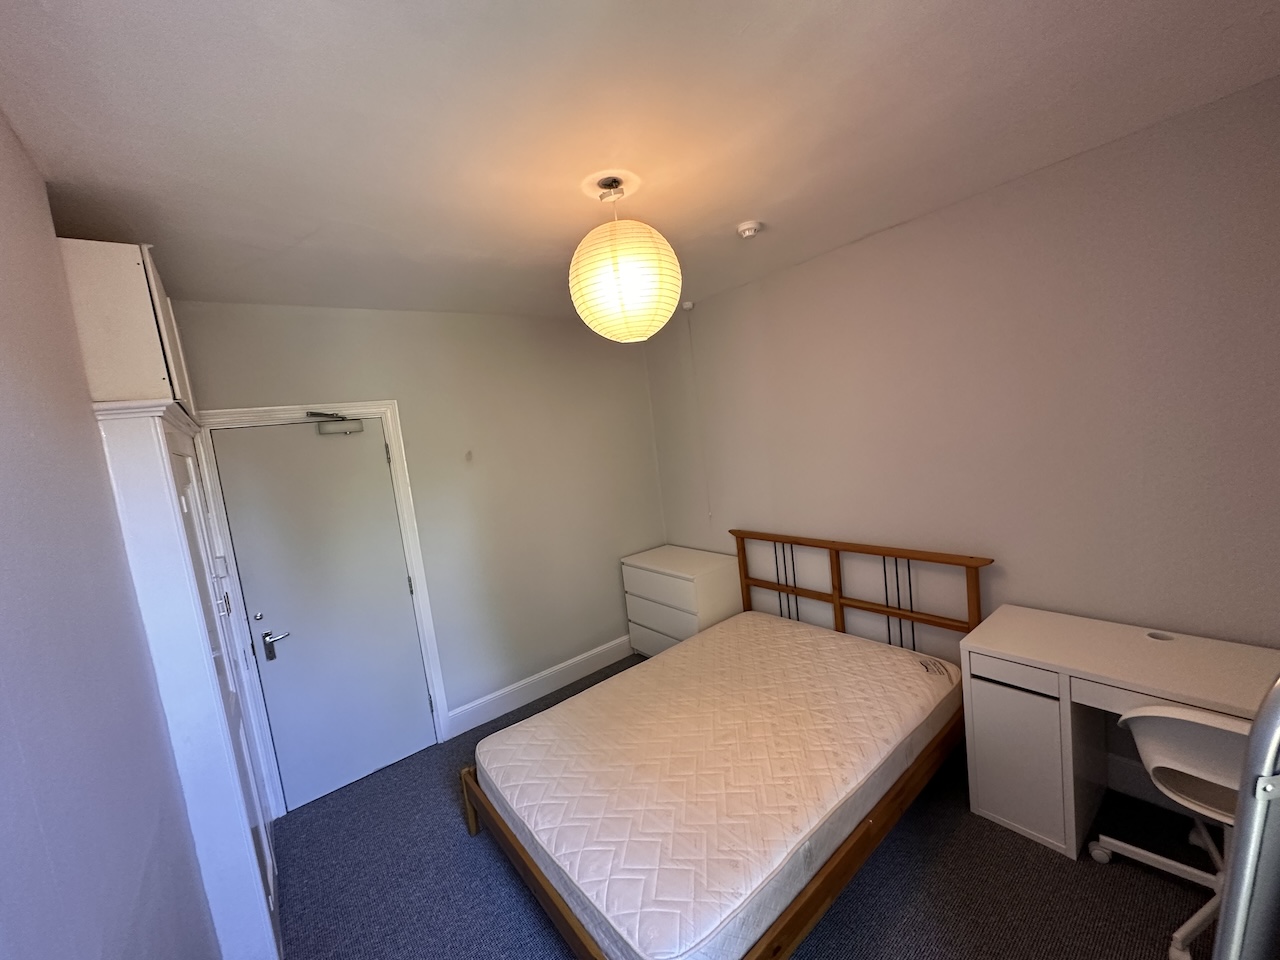 14 St Pauls Road, Gloucester, 6 Bedrooms Bedrooms, ,2 BathroomsBathrooms,Student,For Rent,St Pauls Road,1022